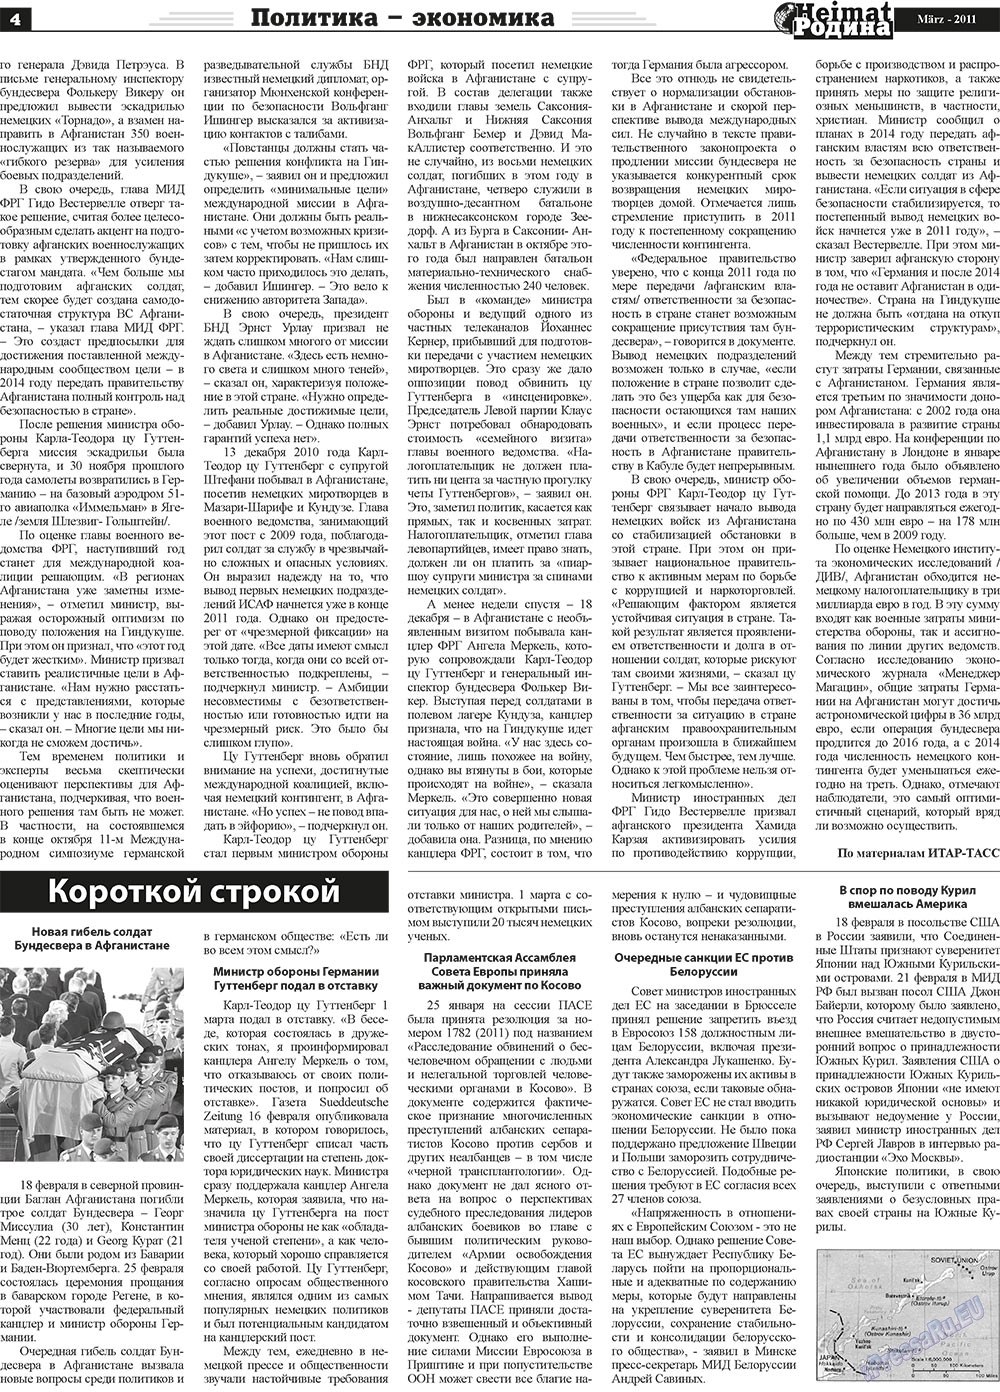 Heimat-Родина (газета). 2011 год, номер 3, стр. 4